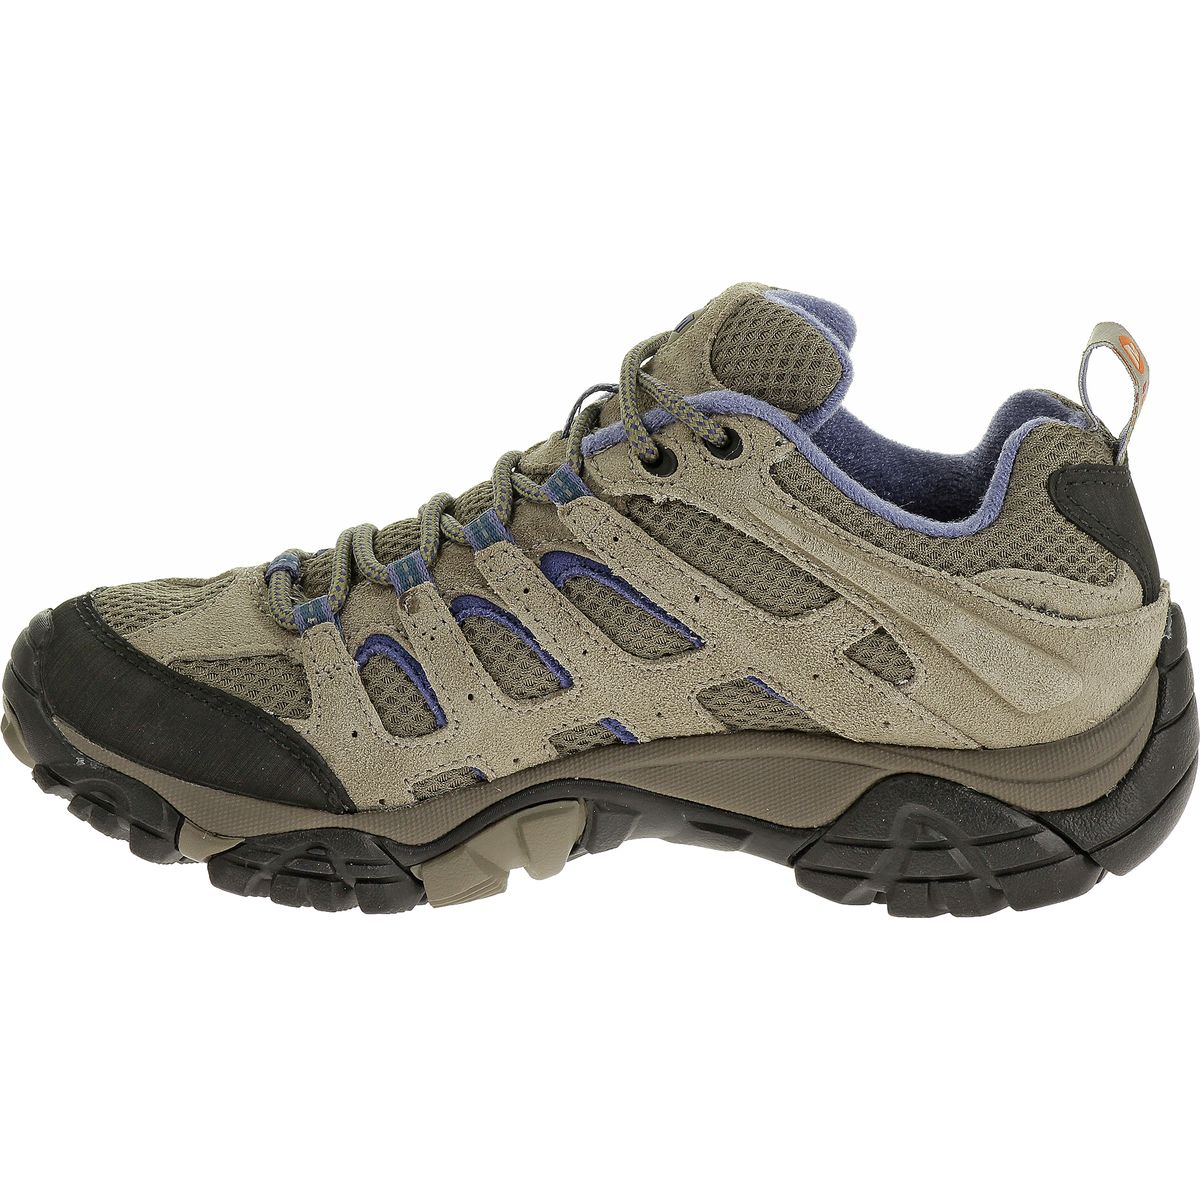 Merrell Moab Ventilator Hiking Shoe - Women's - Footwear